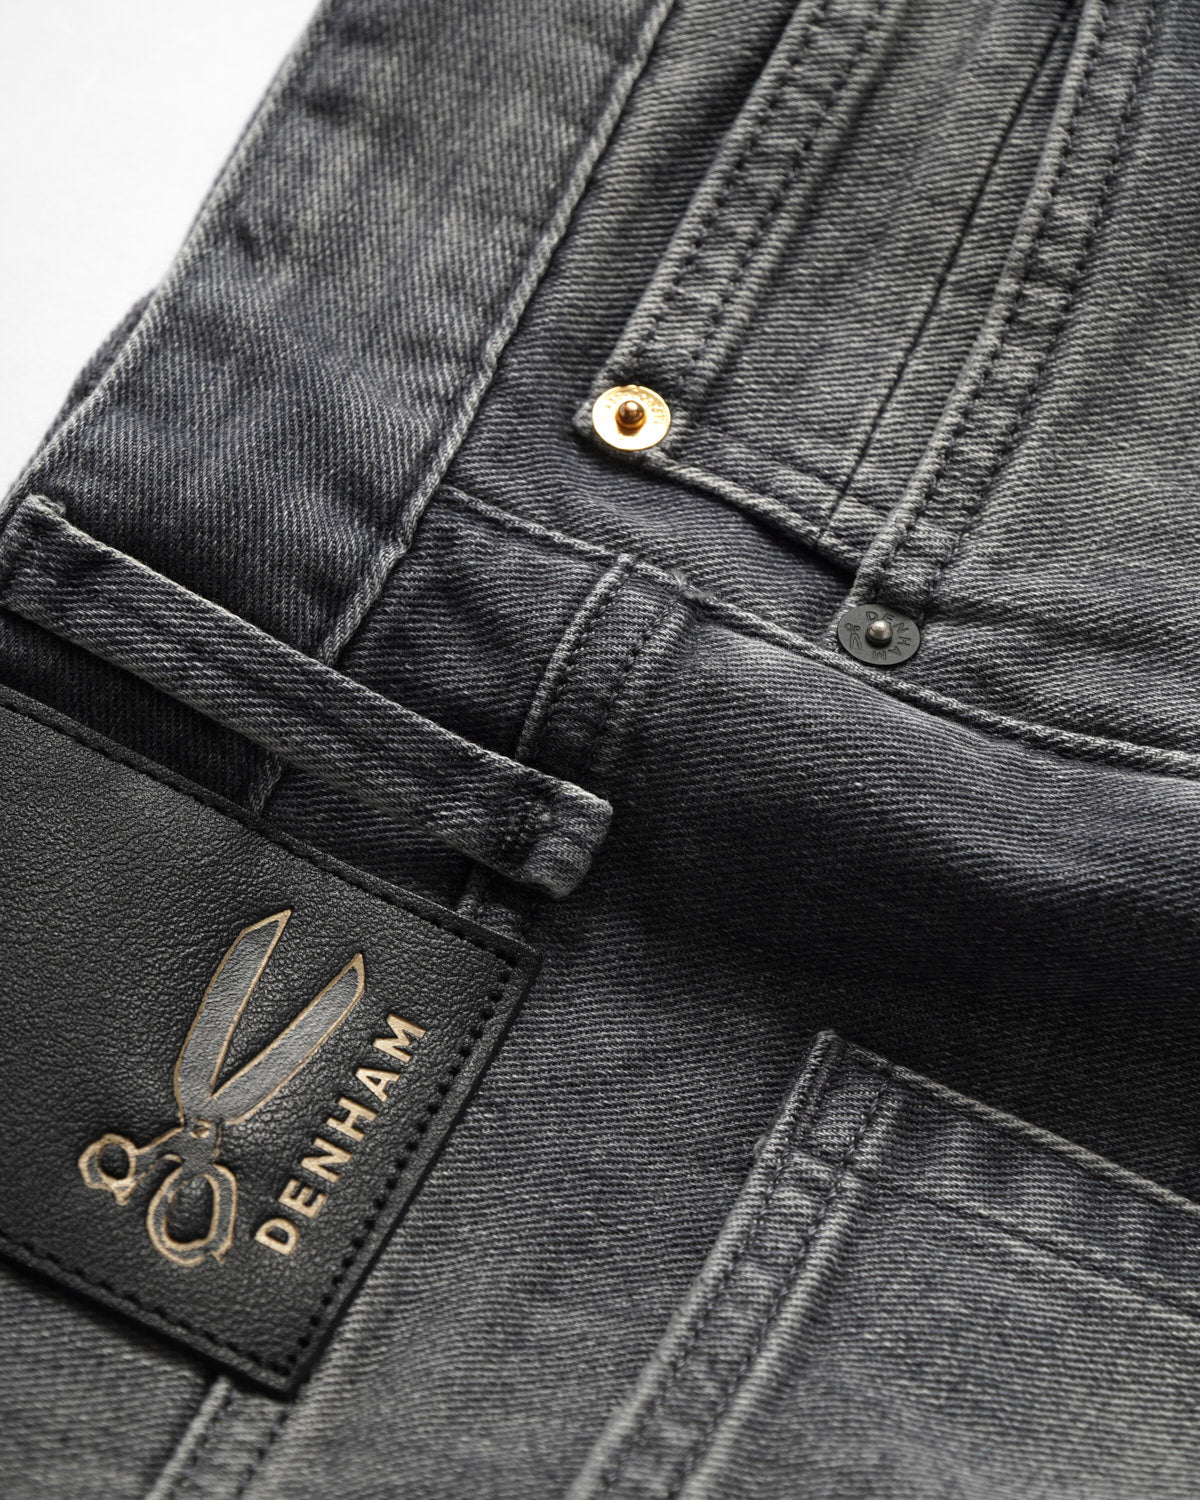 Denham Grey 'Razor' Black Label Golden Rivet Slim Jeans – Blazer